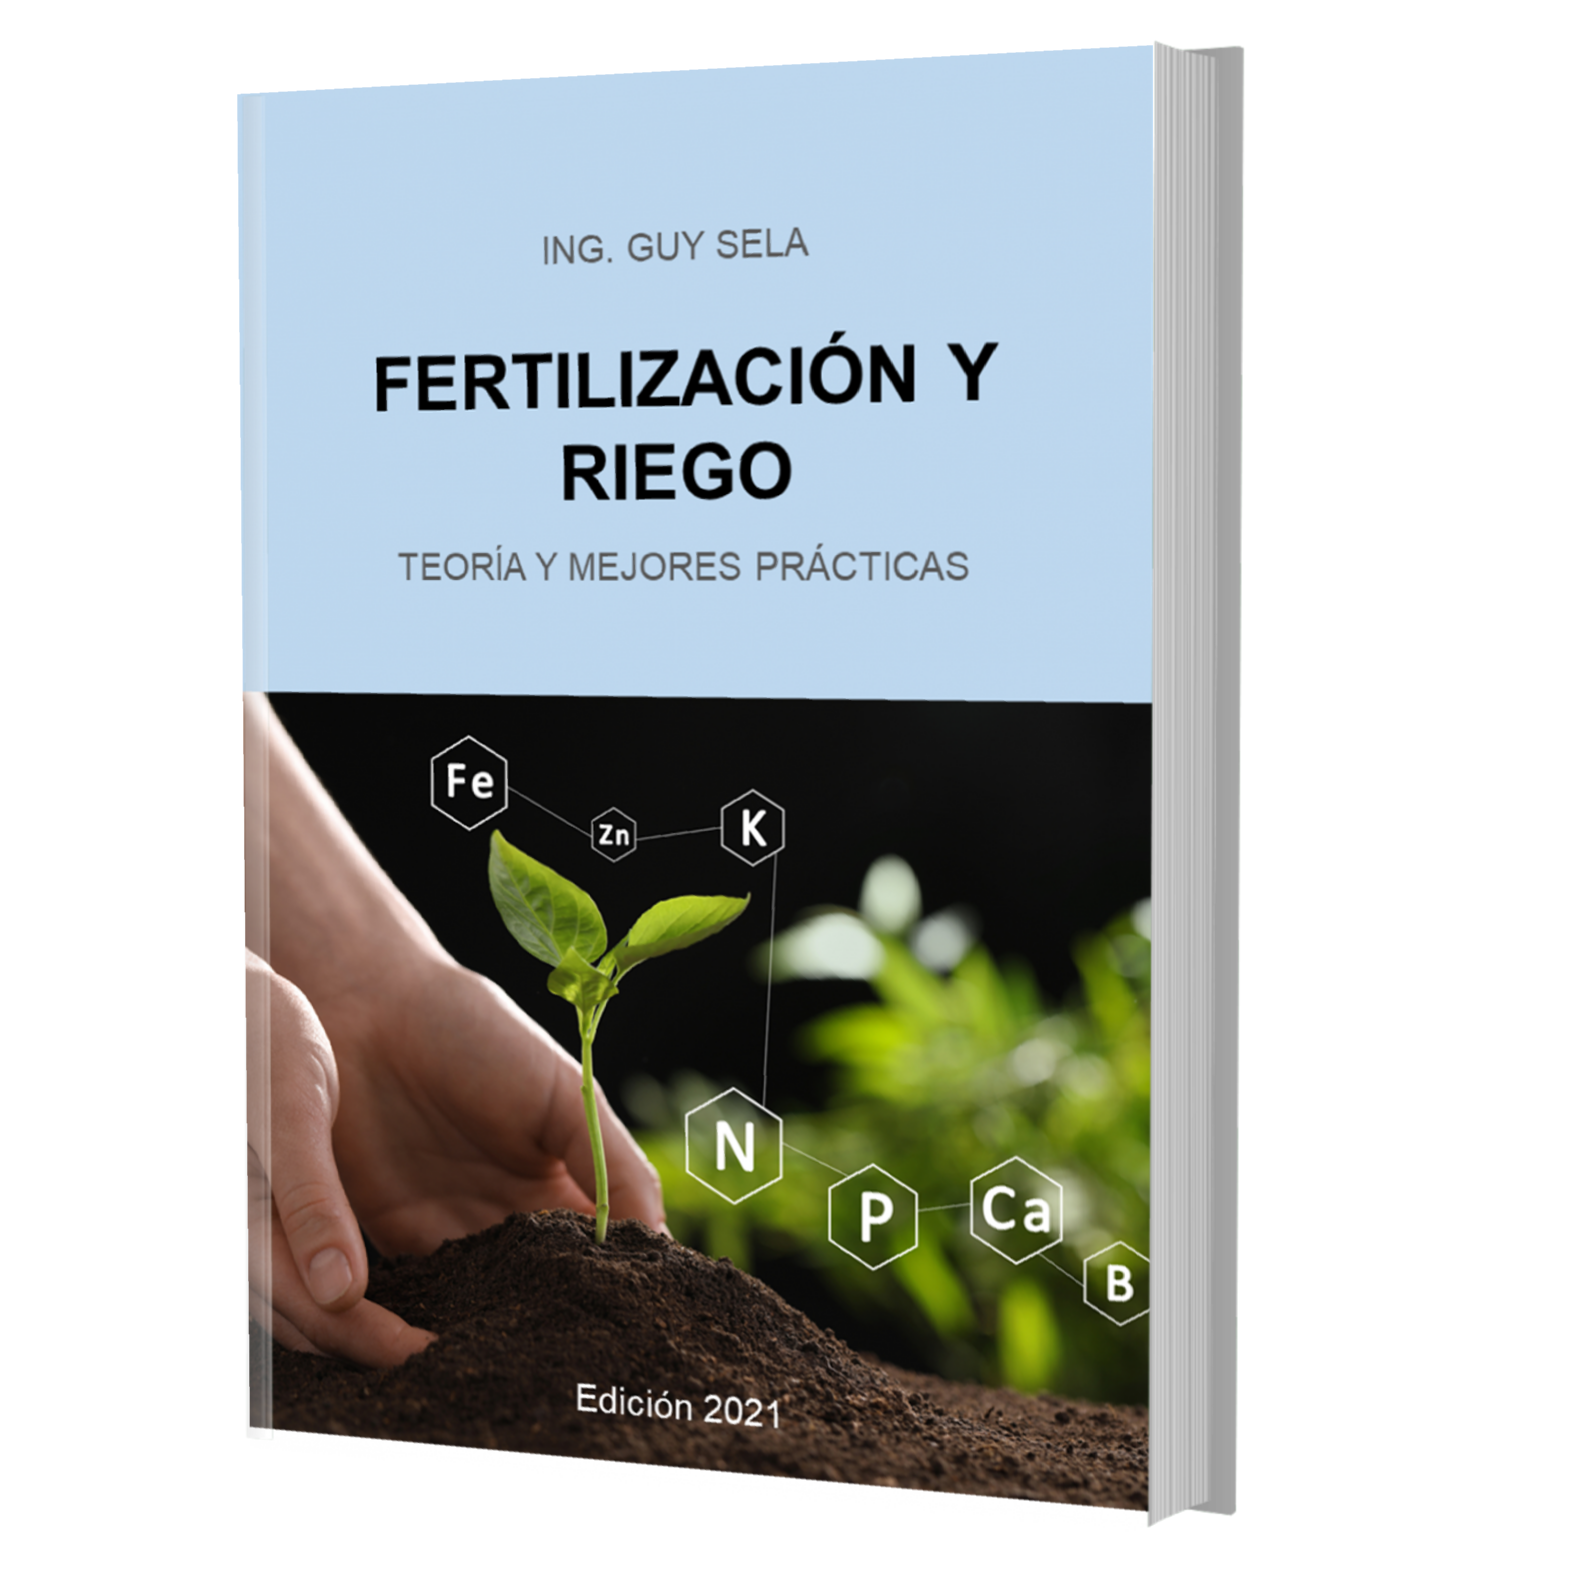 Fertilizacion y riego - teoría y mejores prácticas